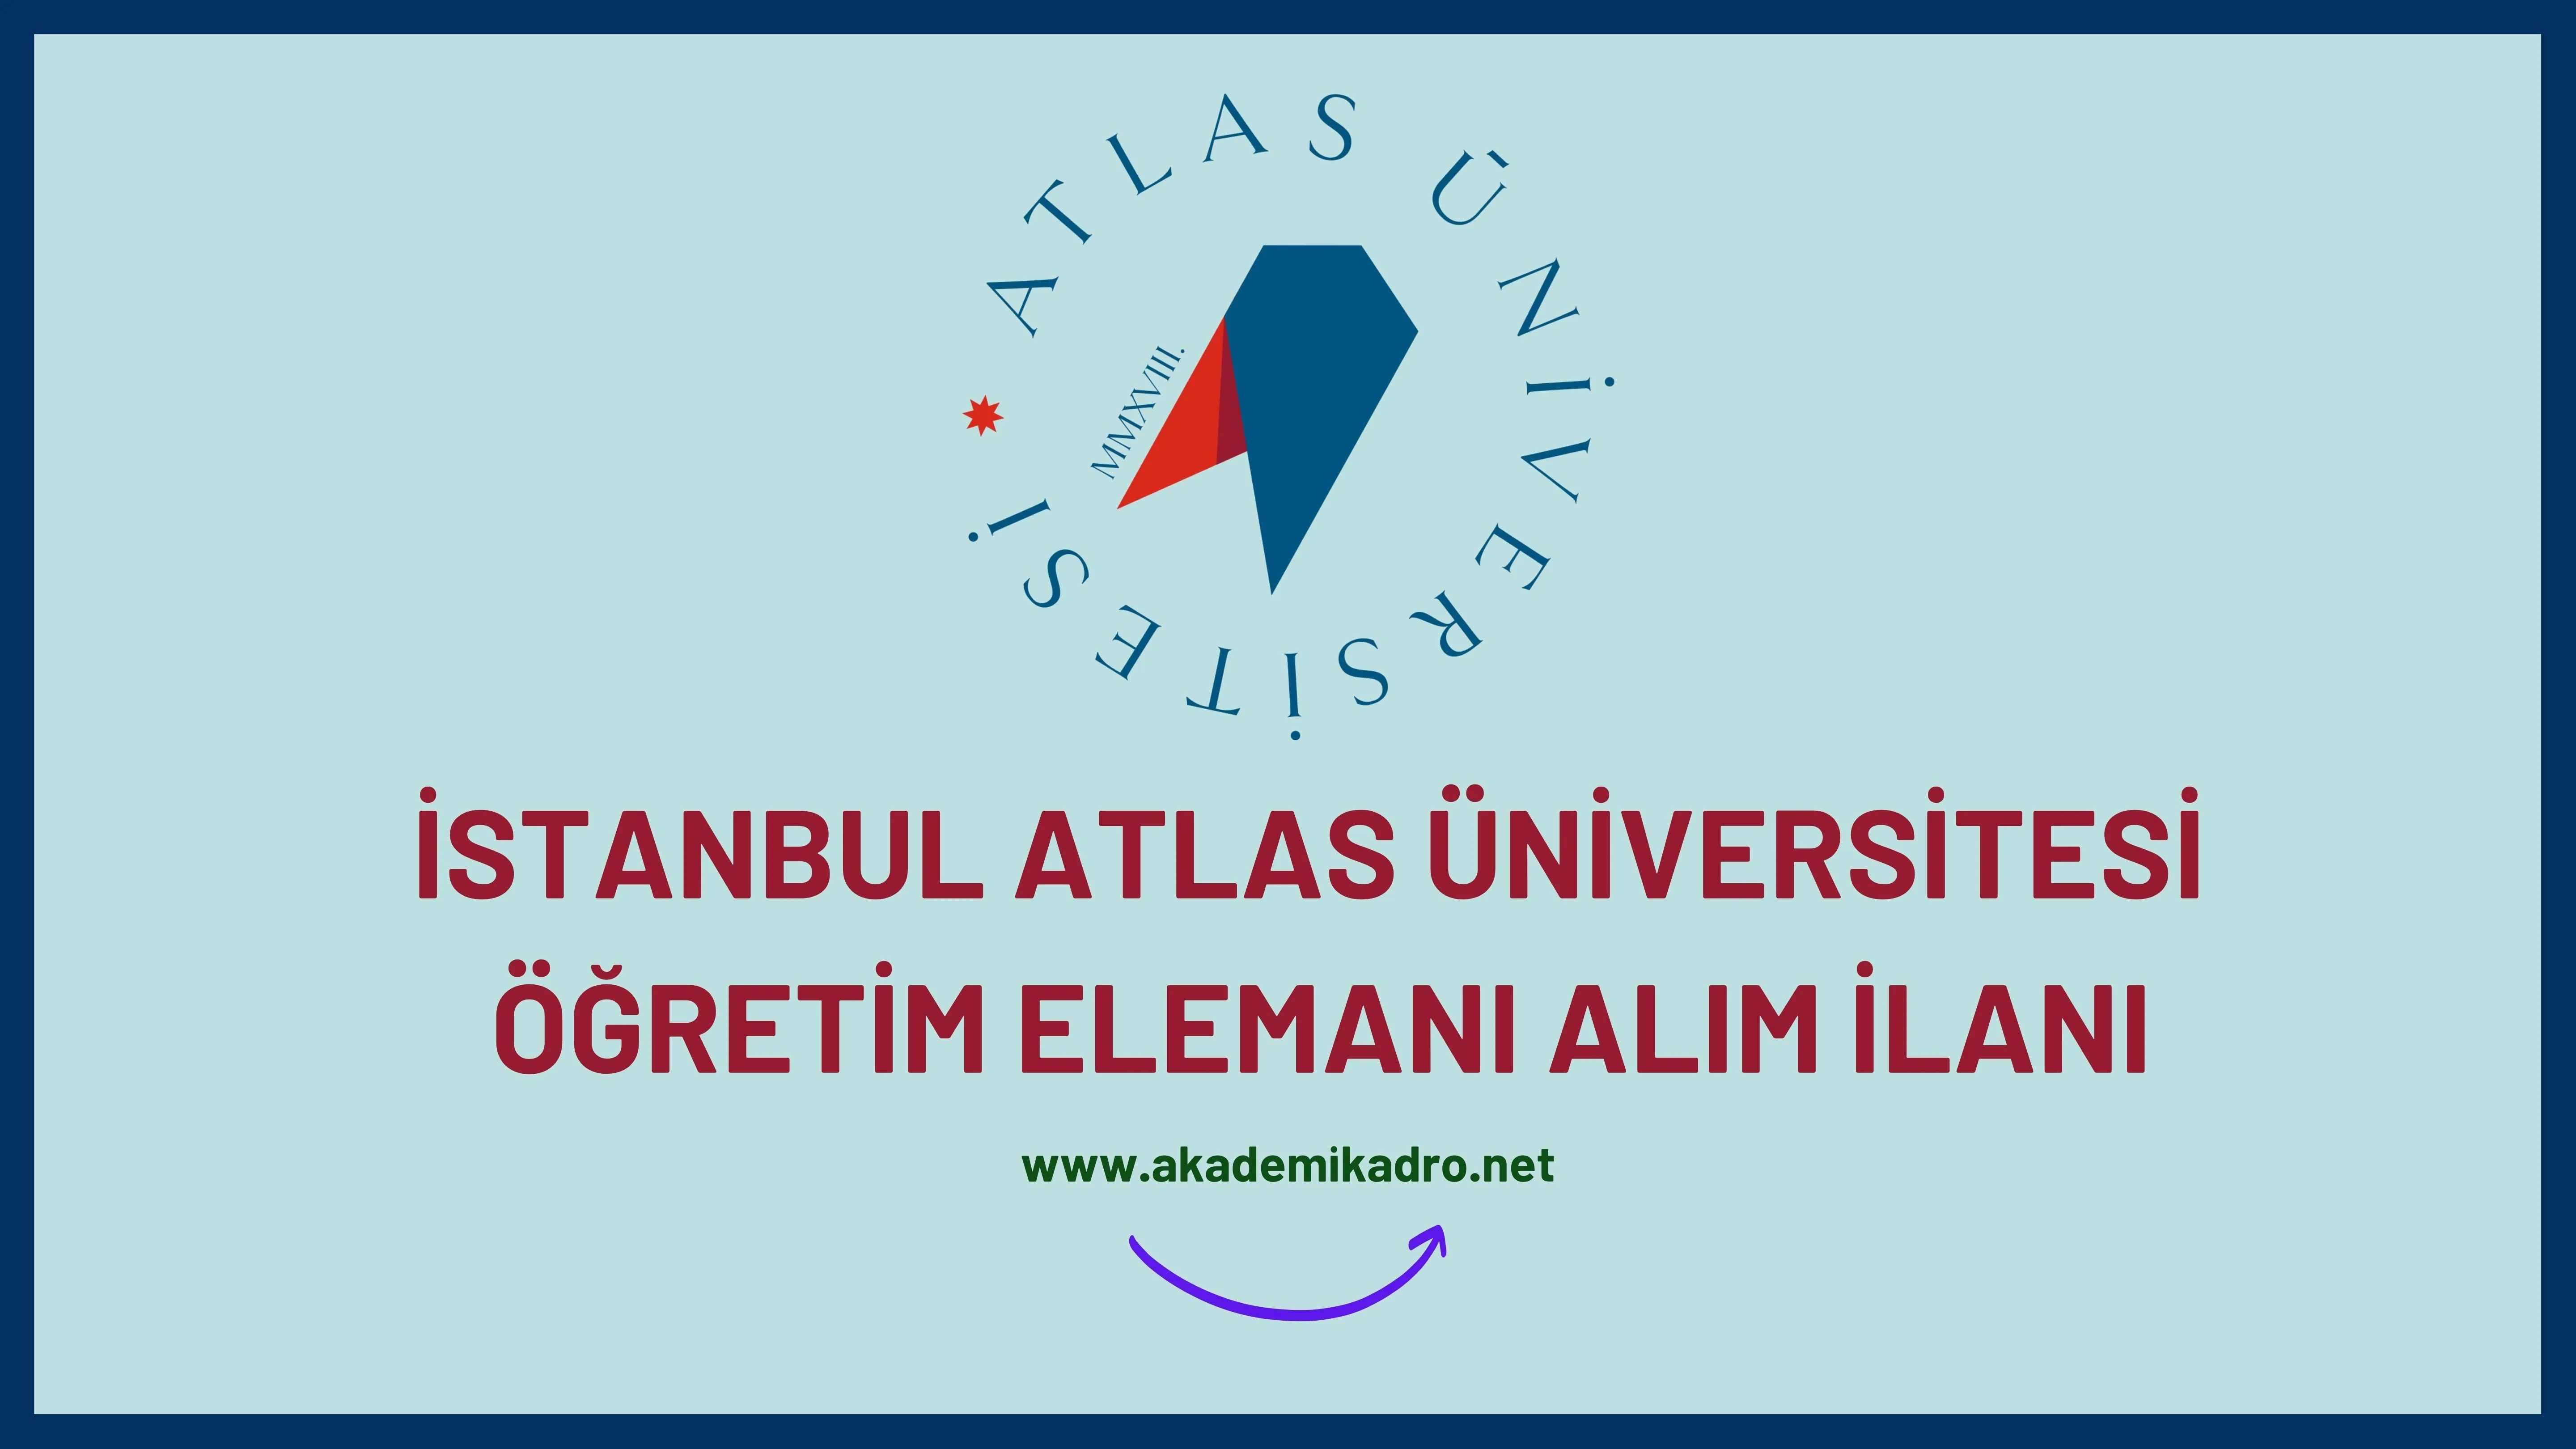 İstanbul Atlas Üniversitesi 2 Öğretim görevlisi, 5 Araştırma görevlisi ve birçok alandan 23 Öğretim üyesi alacak.